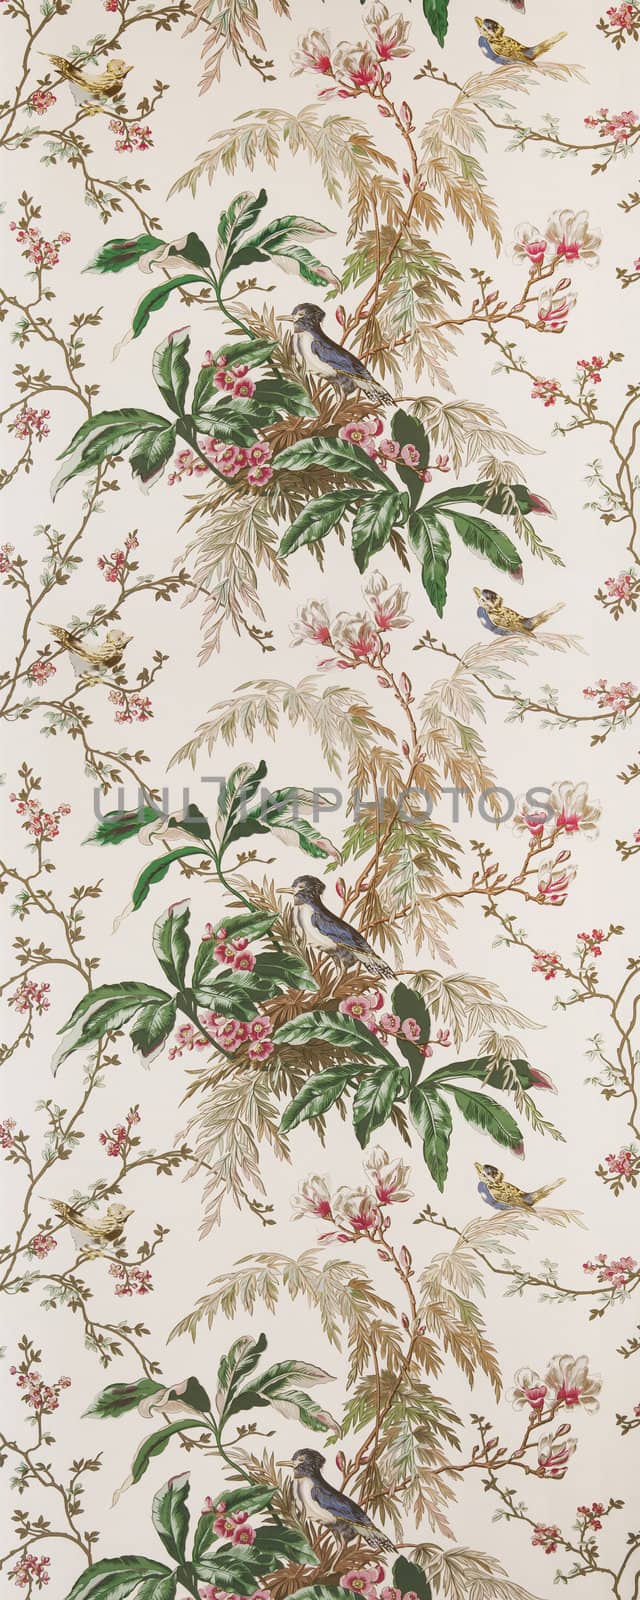 An image of an old bird wallpaper